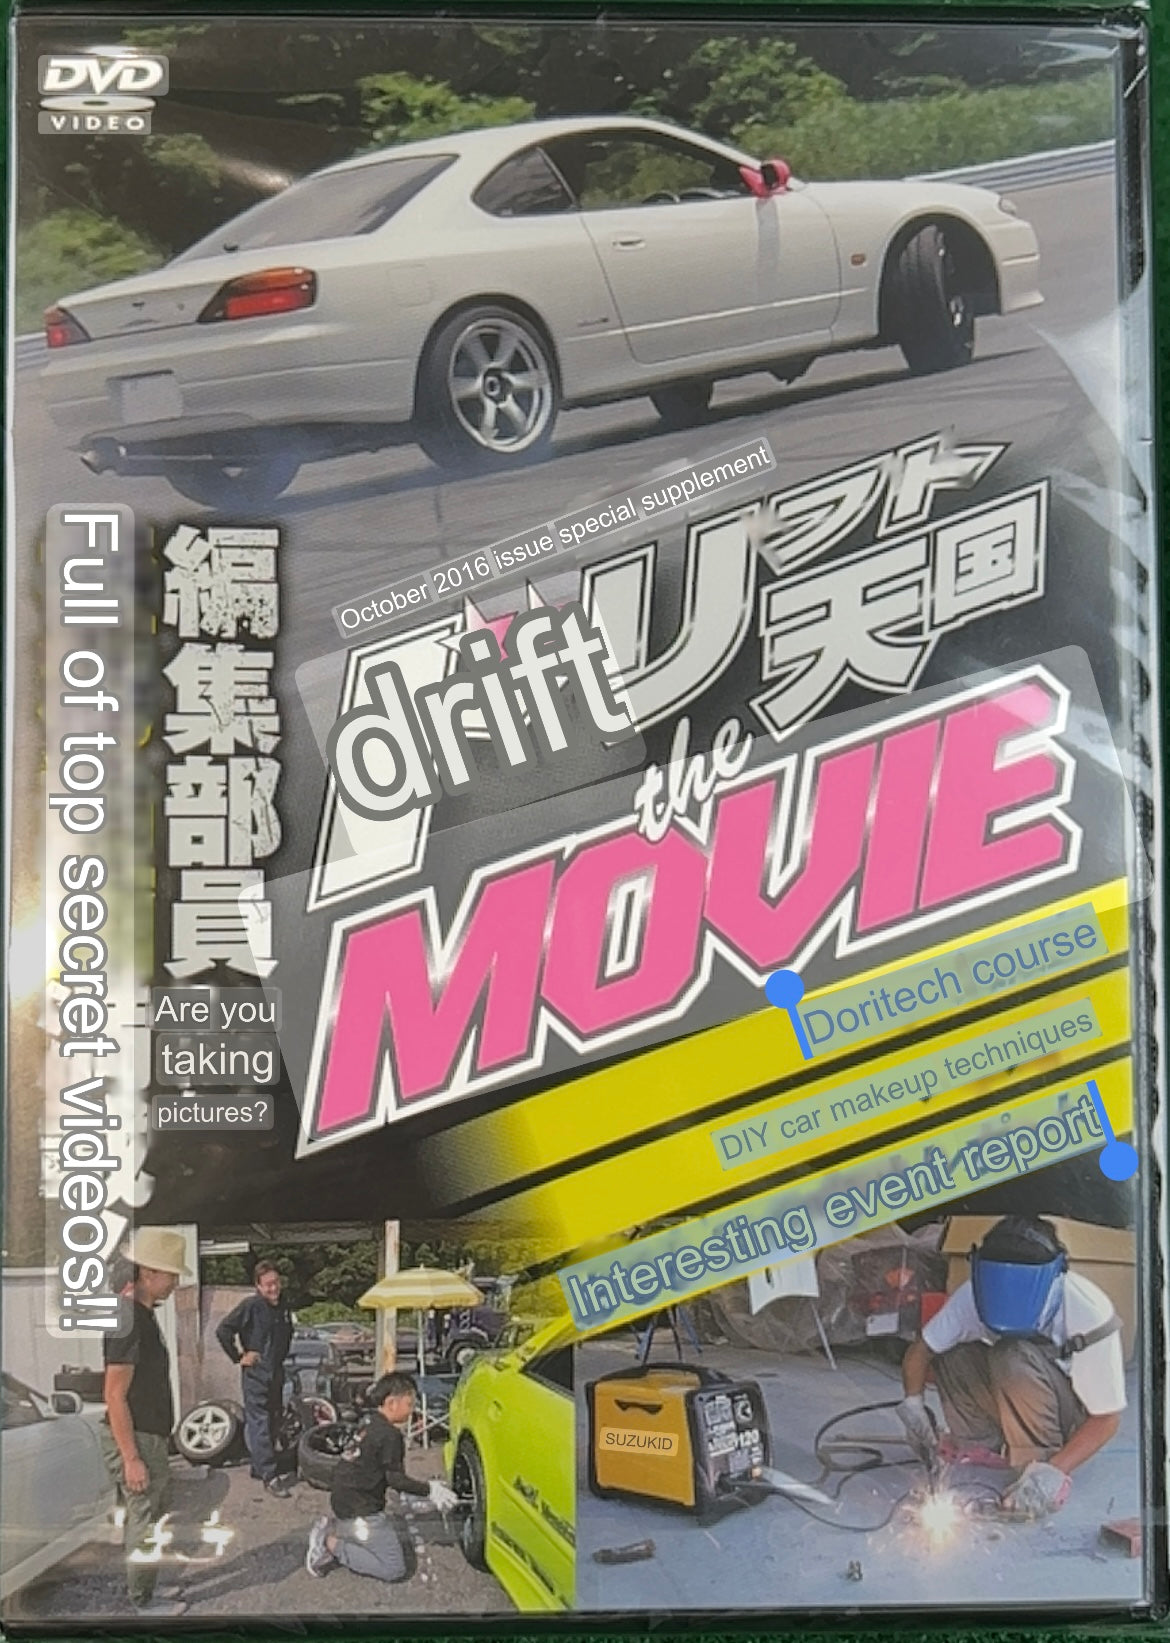 Drift Tengoku DVD:  “The Movie” - October 2016